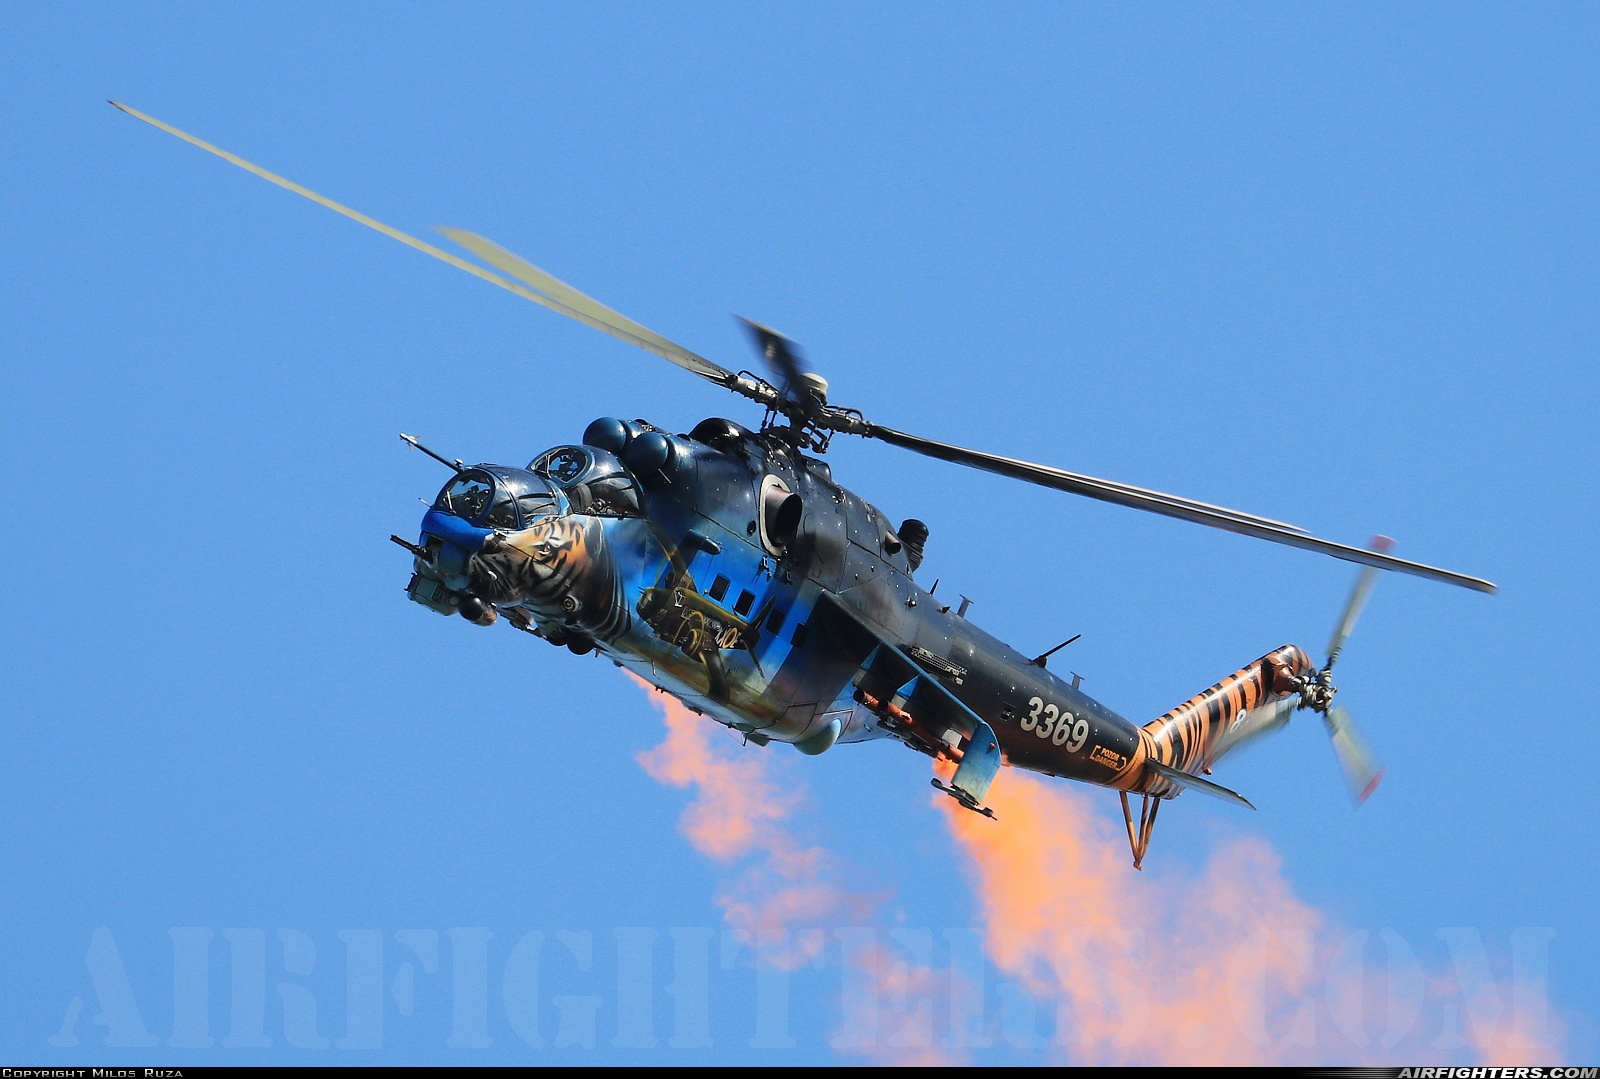 Czech Republic - Air Force Mil Mi-35 (Mi-24V) 3369 at Ostrava - Mosnov (OSR / LKMT), Czech Republic